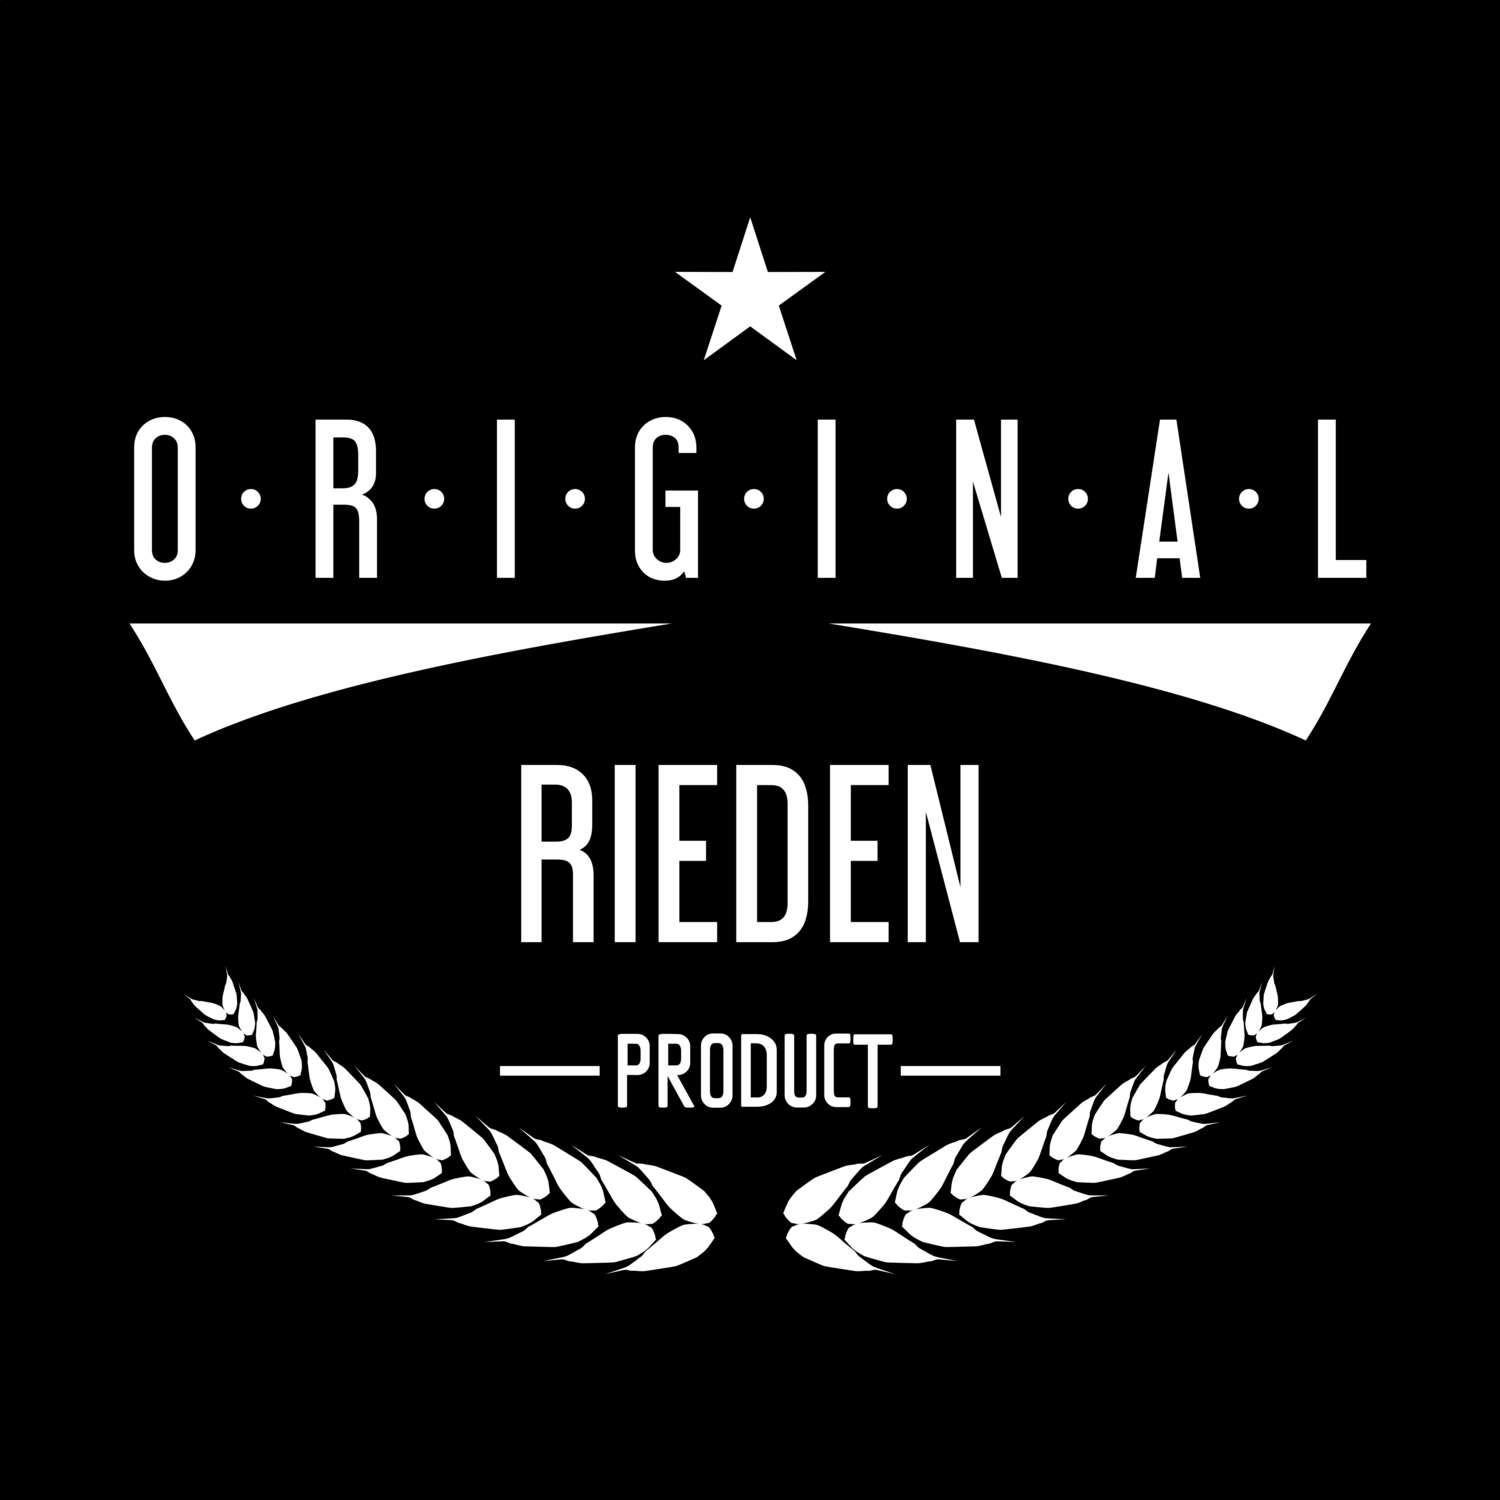 Rieden T-Shirt »Original Product«